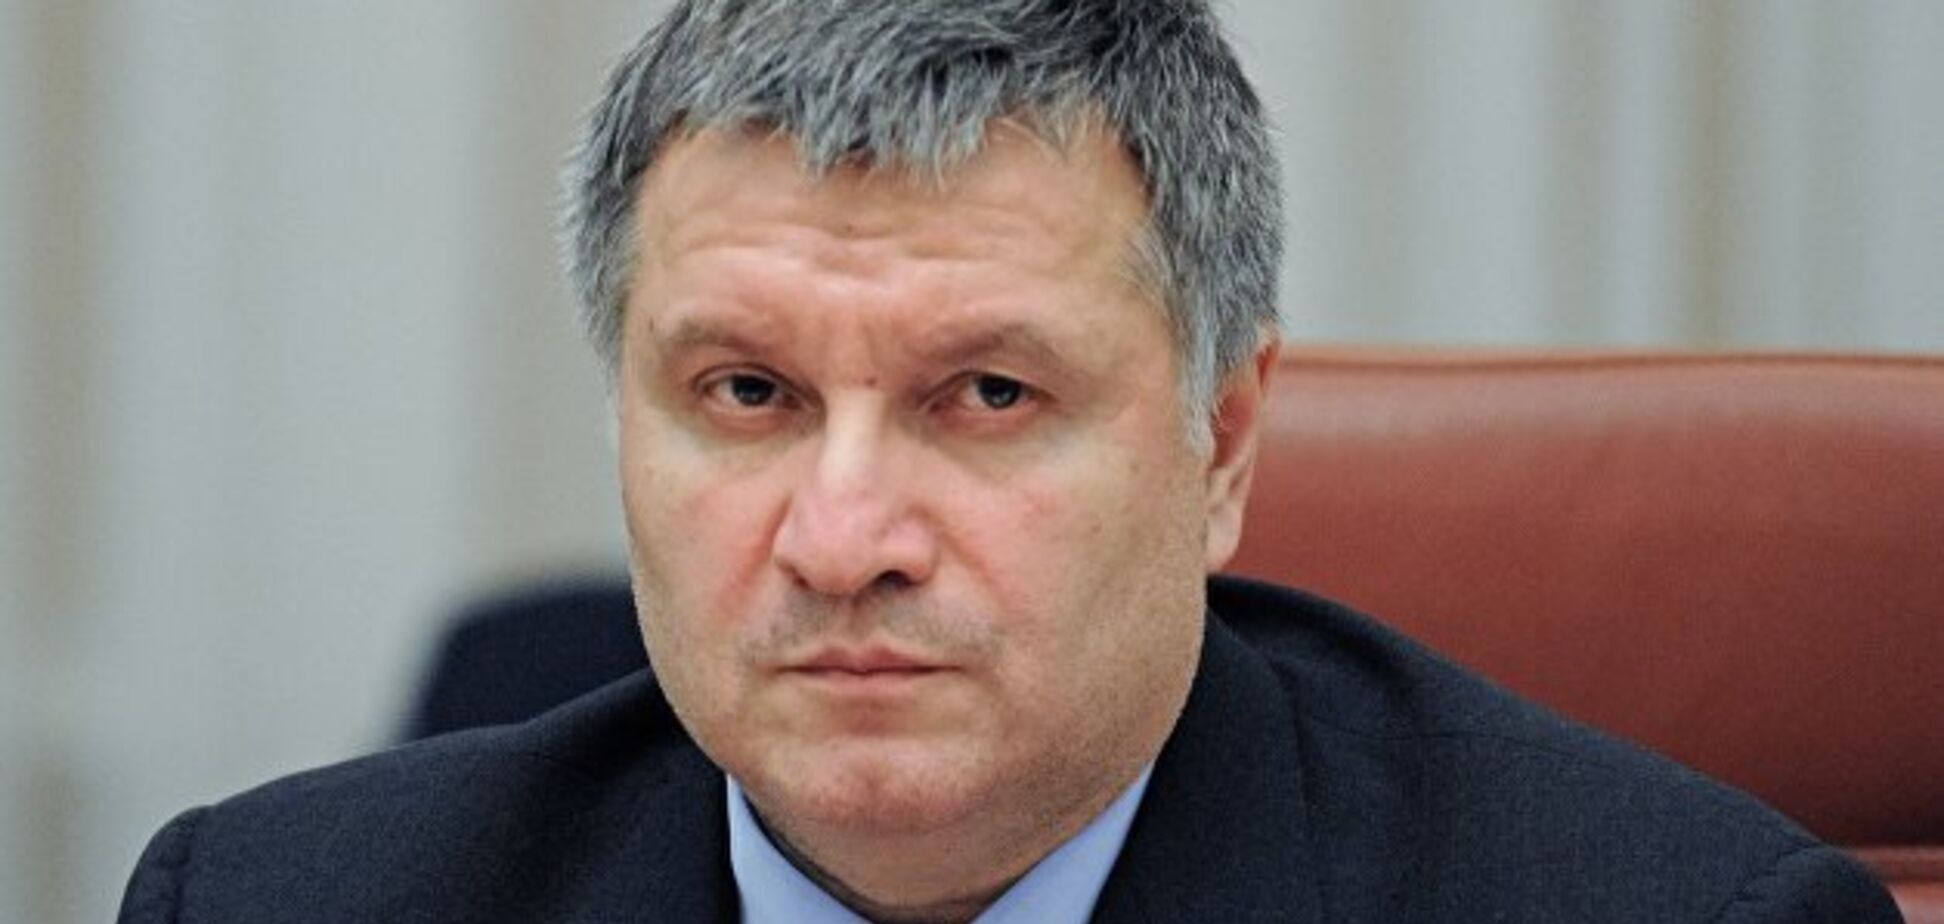 Иностранные партнеры и наблюдатели оценили работу Авакова, отметив прозрачность выборов – эксперт